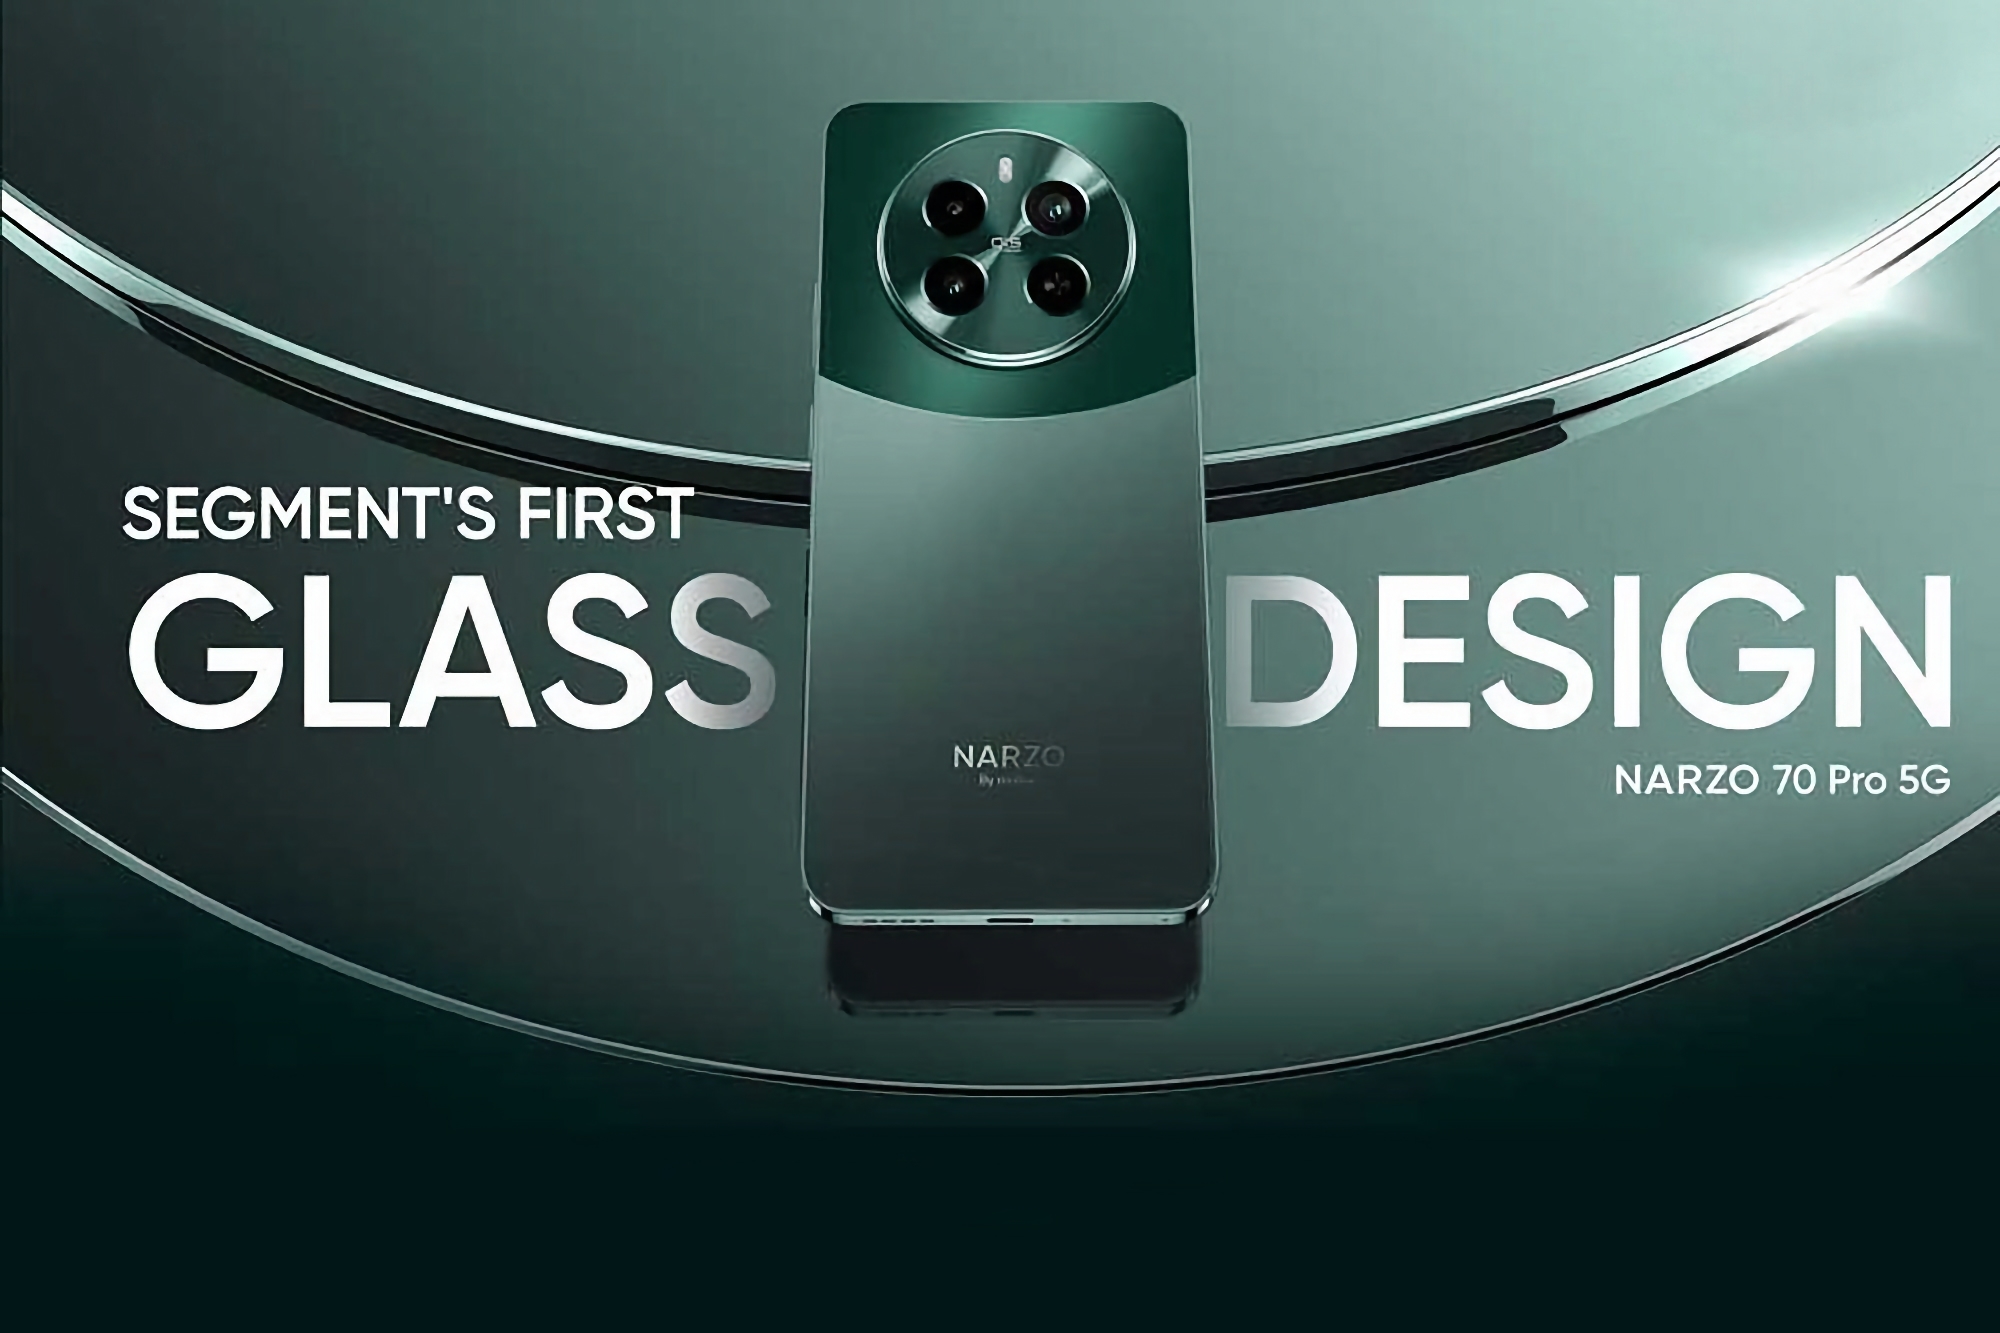 Confirmé : le Realme Narzo 70 Pro 5G sera doté d'une batterie de 5000 mAh et d'un système de charge rapide de 67W.